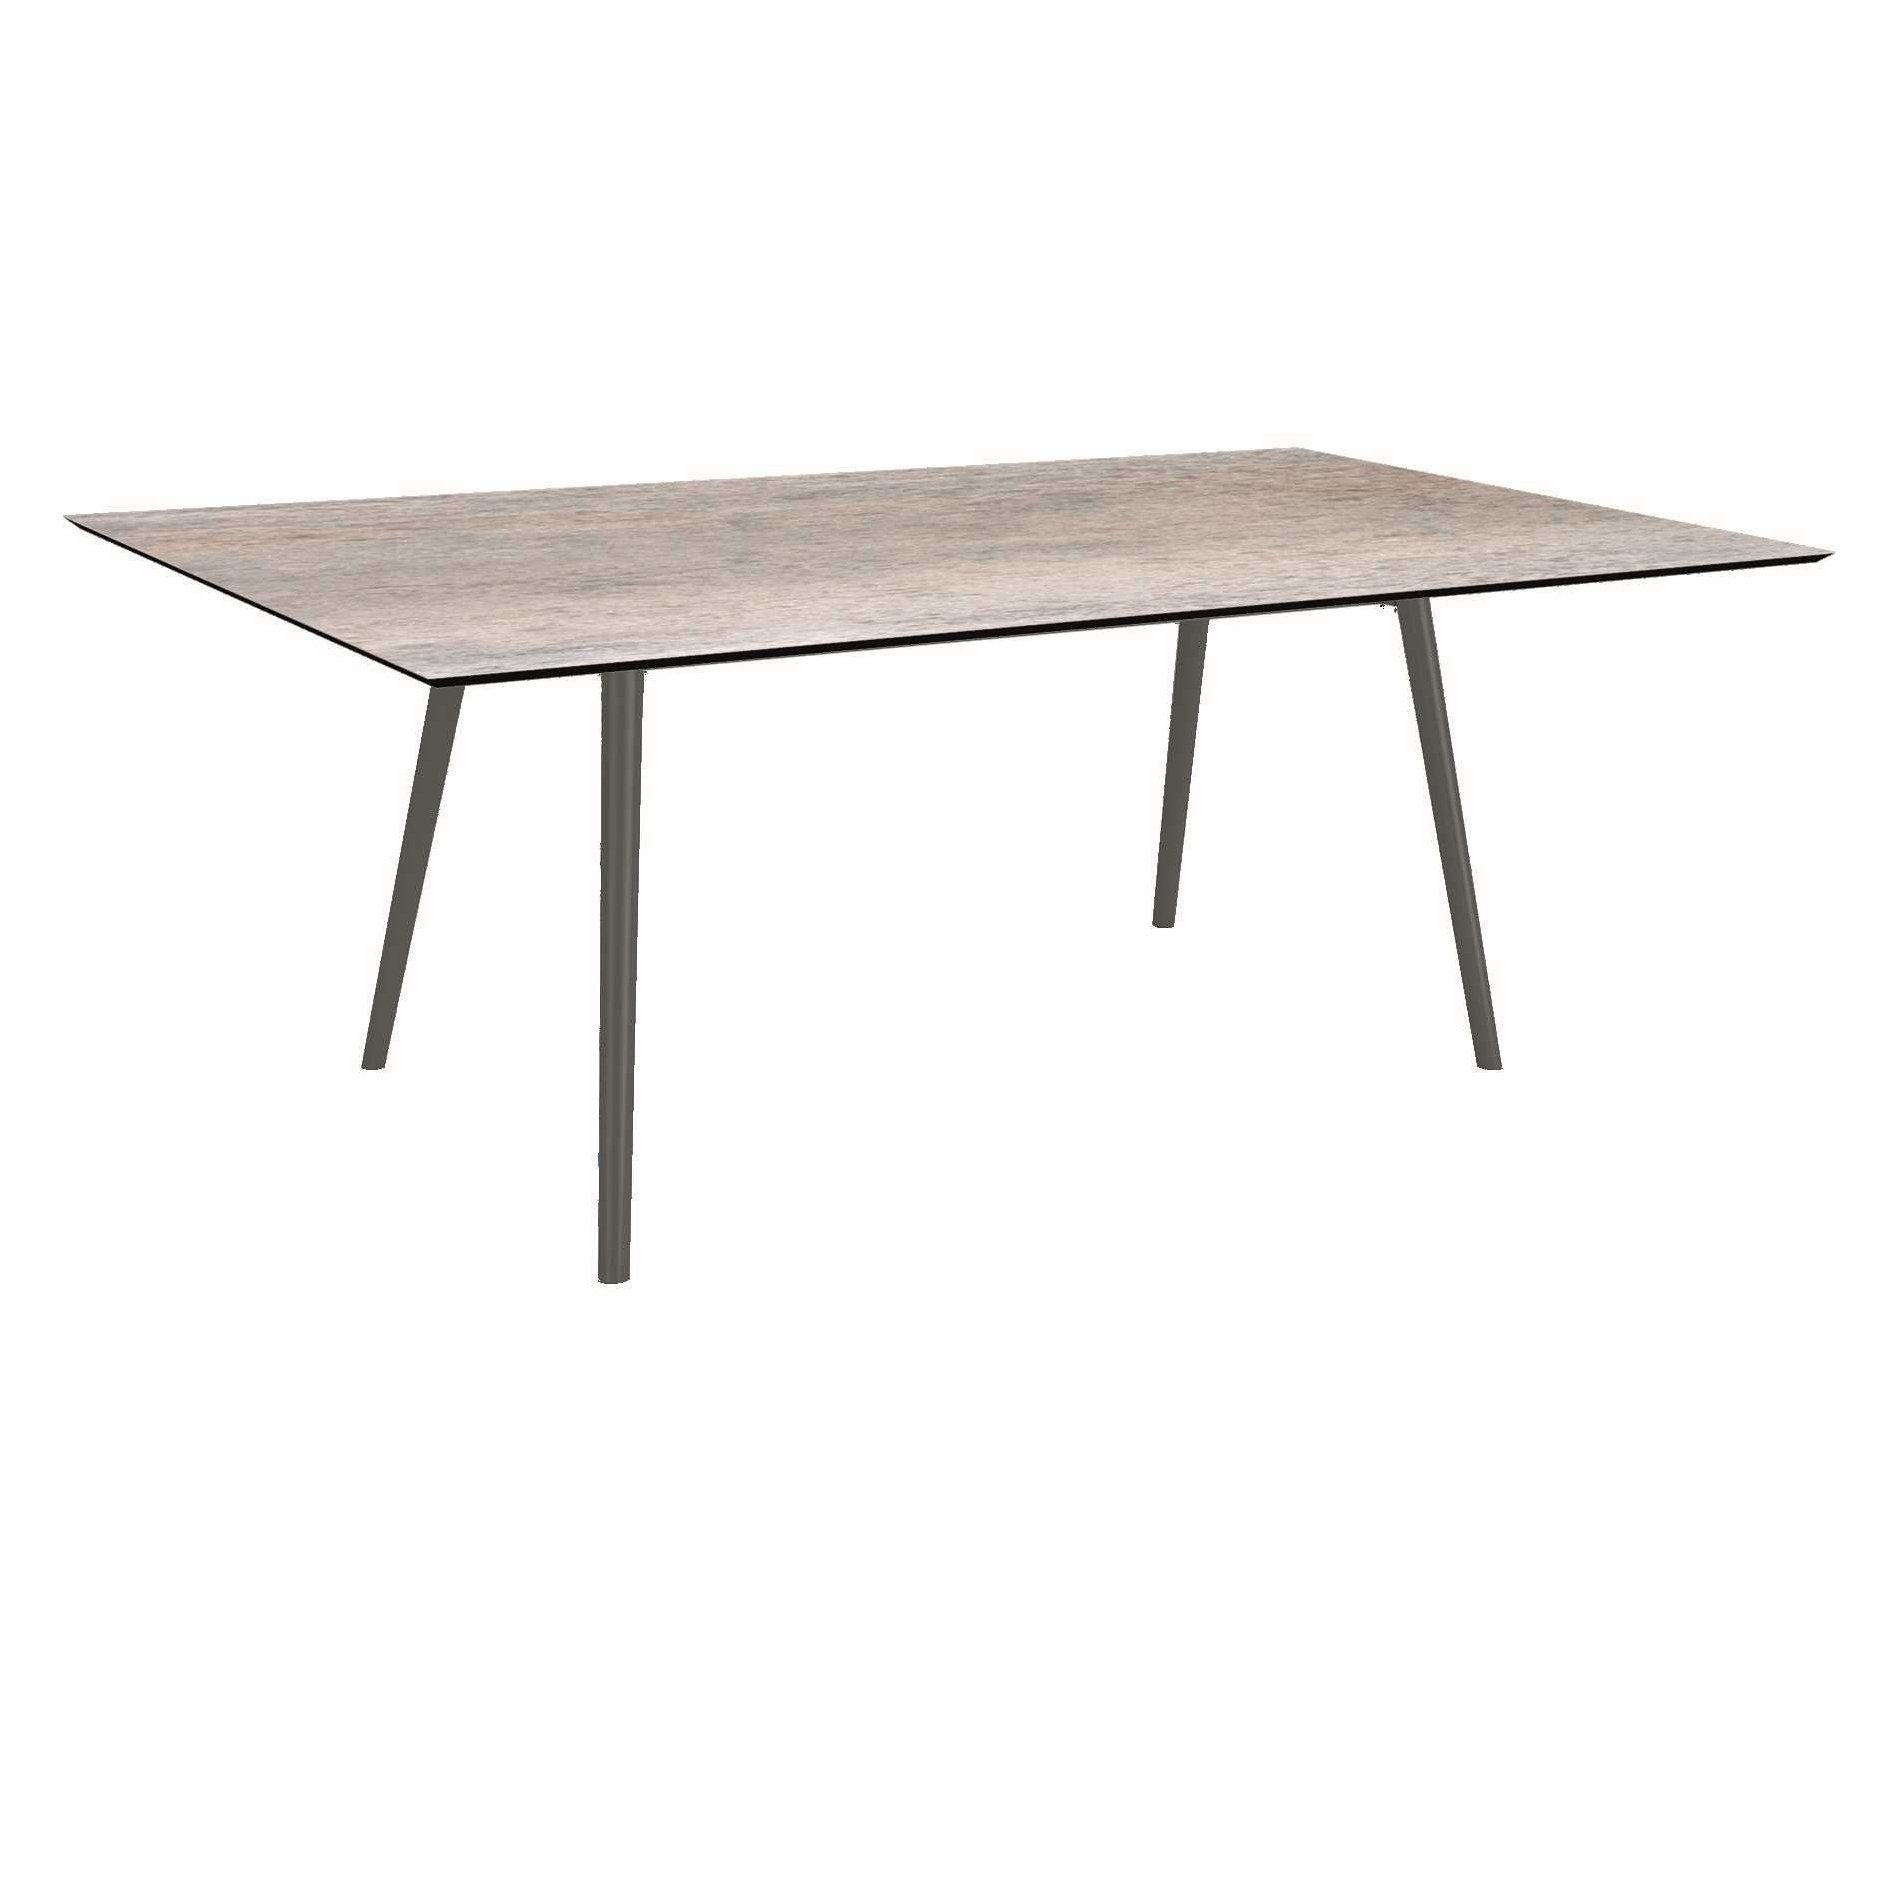 Stern Tisch "Interno", Größe 180x100cm, Alu anthrazit, Rundrohr, Tischplatte HPL Smoky